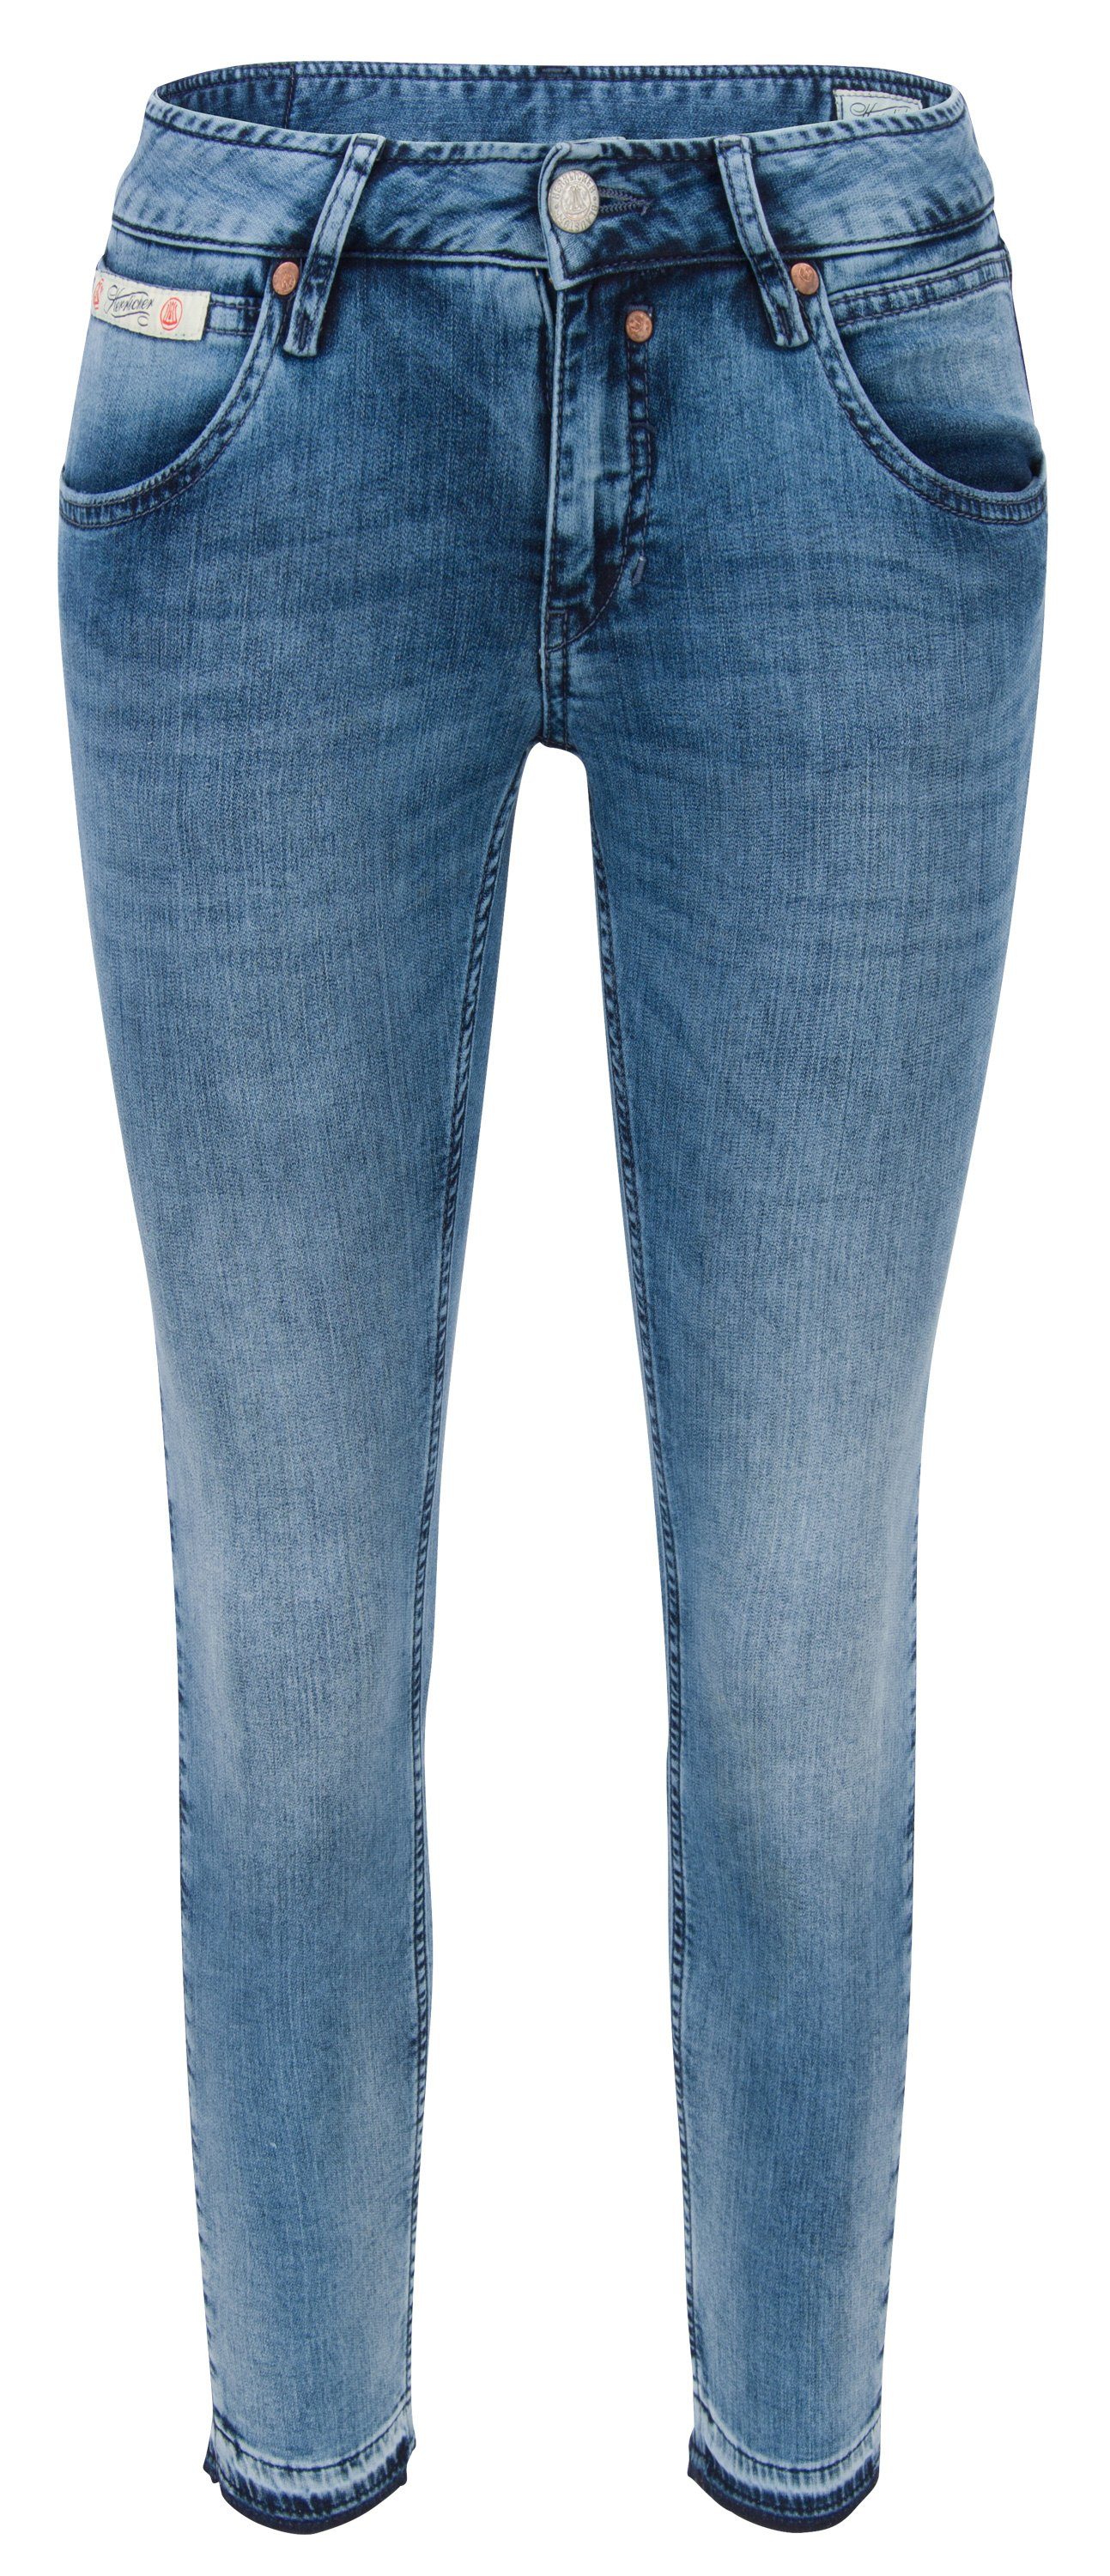 größter Versandhandel für Mode Herrlicher Stretch-Jeans TOUCH aged Jogg medium Cropped HERRLICHER 5320-D9648-682 Denim